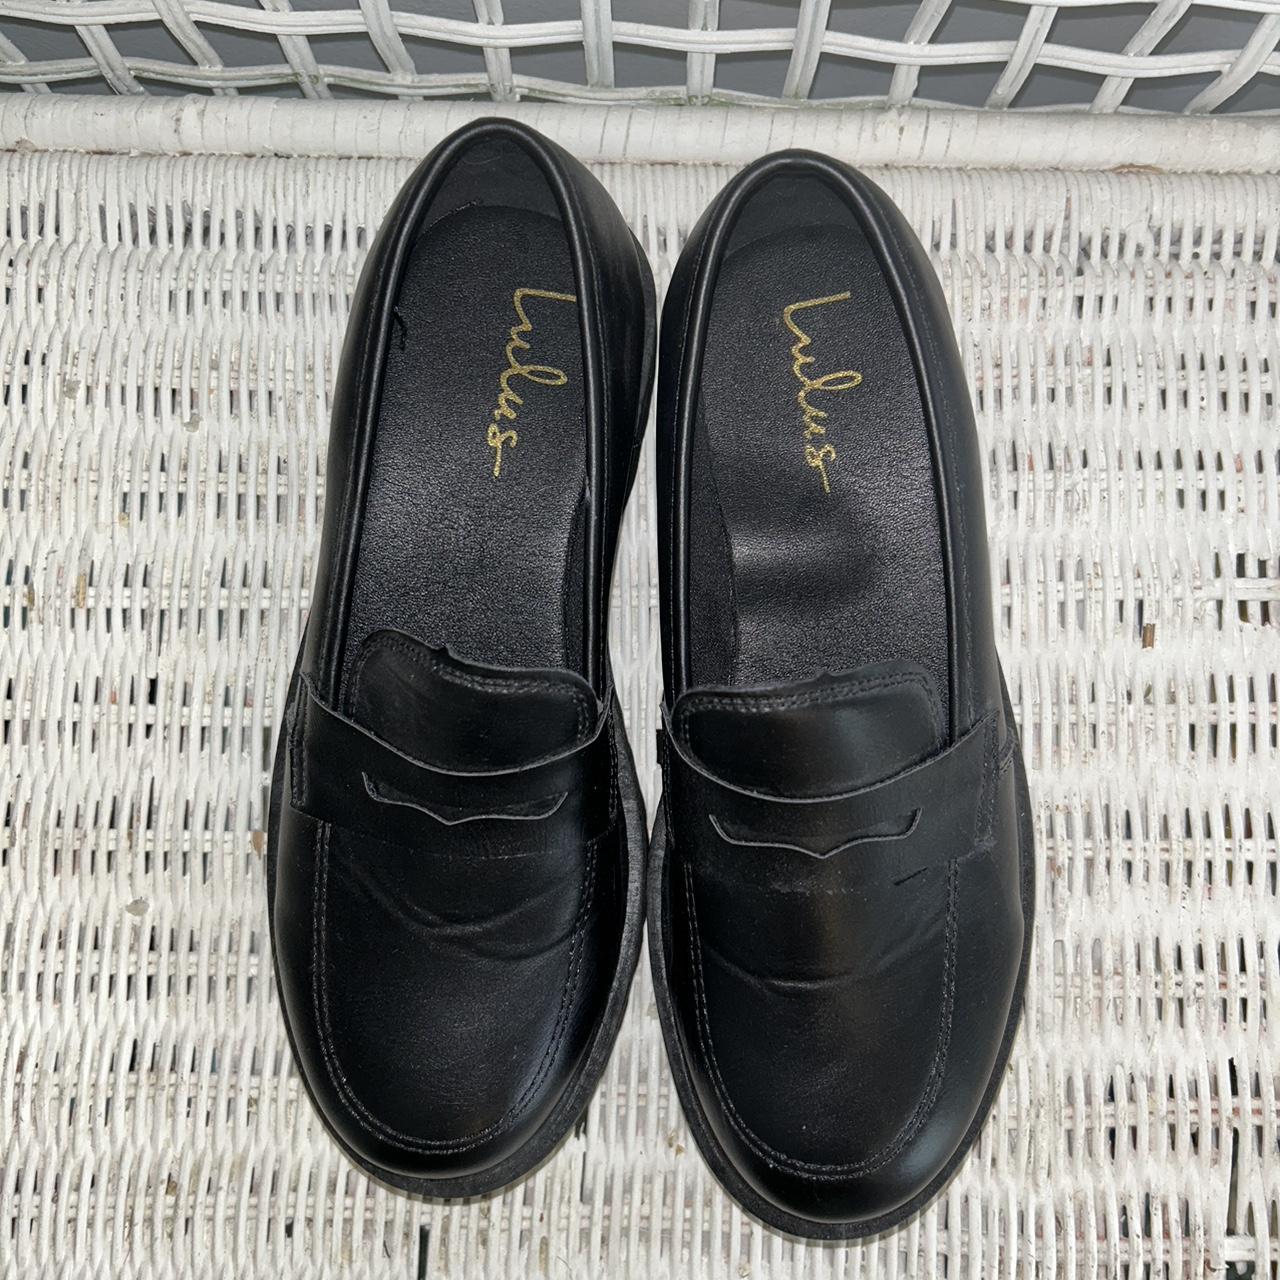 black platform loafers Labeled as U.S Women's size... - Depop